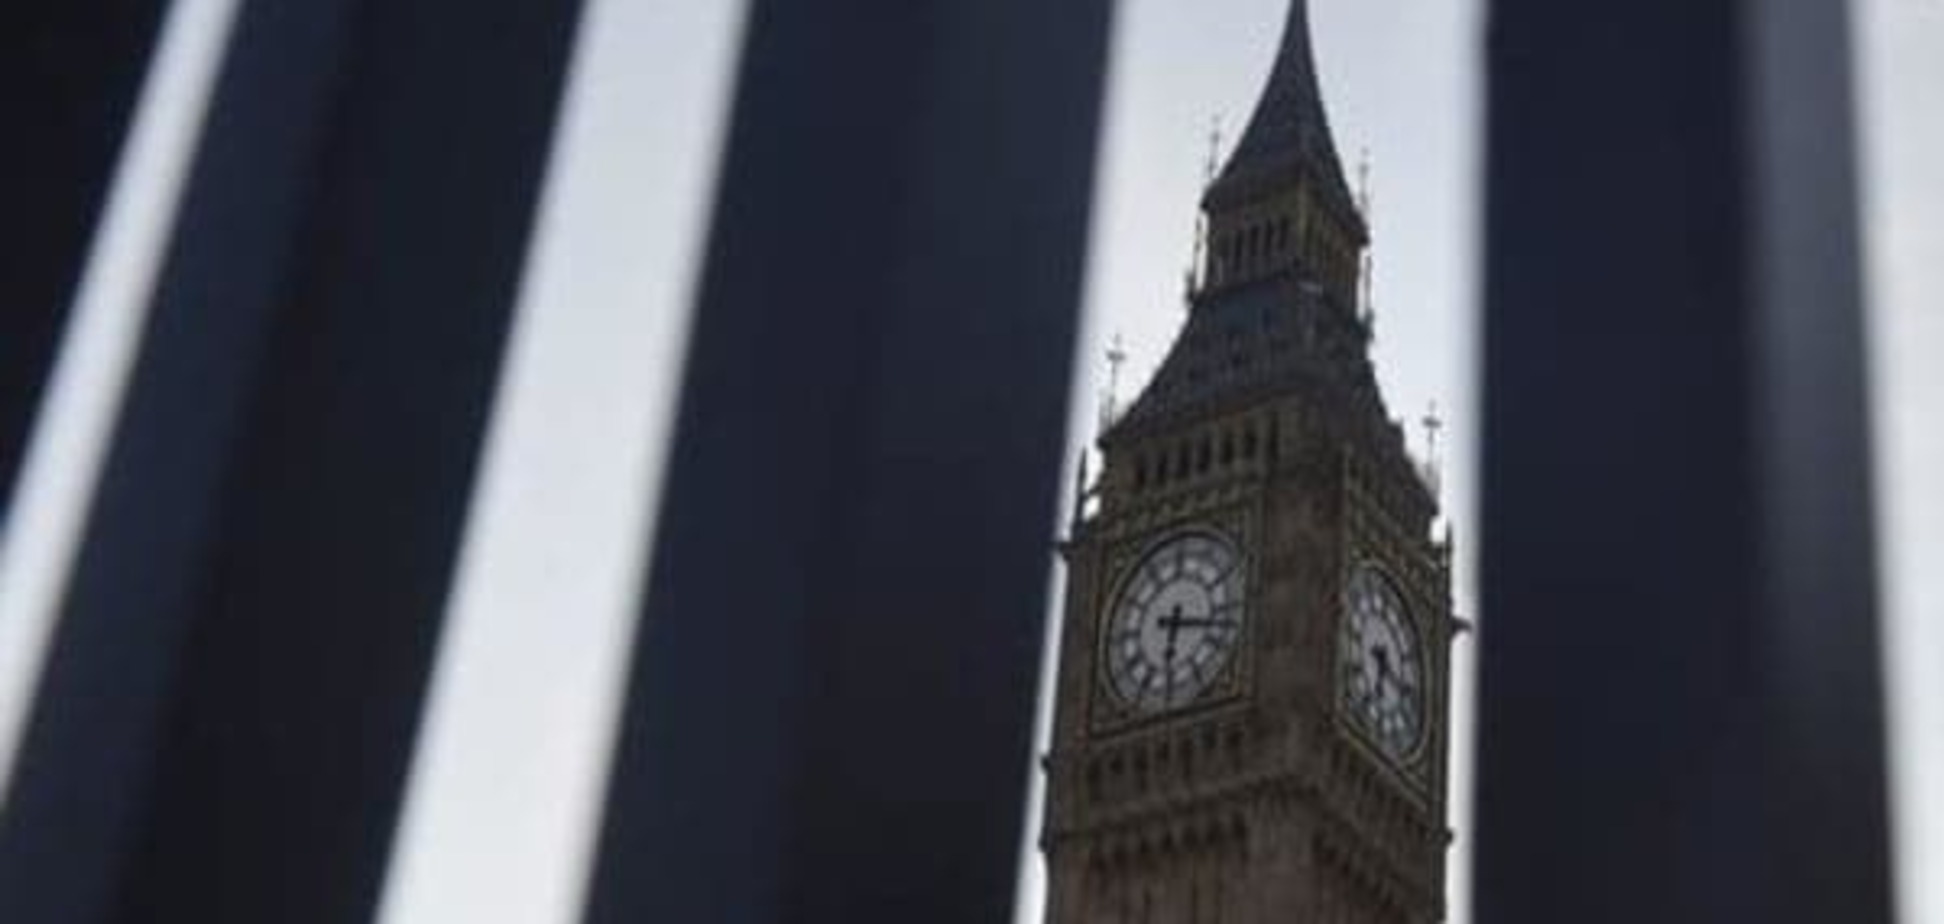 Європарламент закликав Лондон швидше розпочати вихід з ЄС